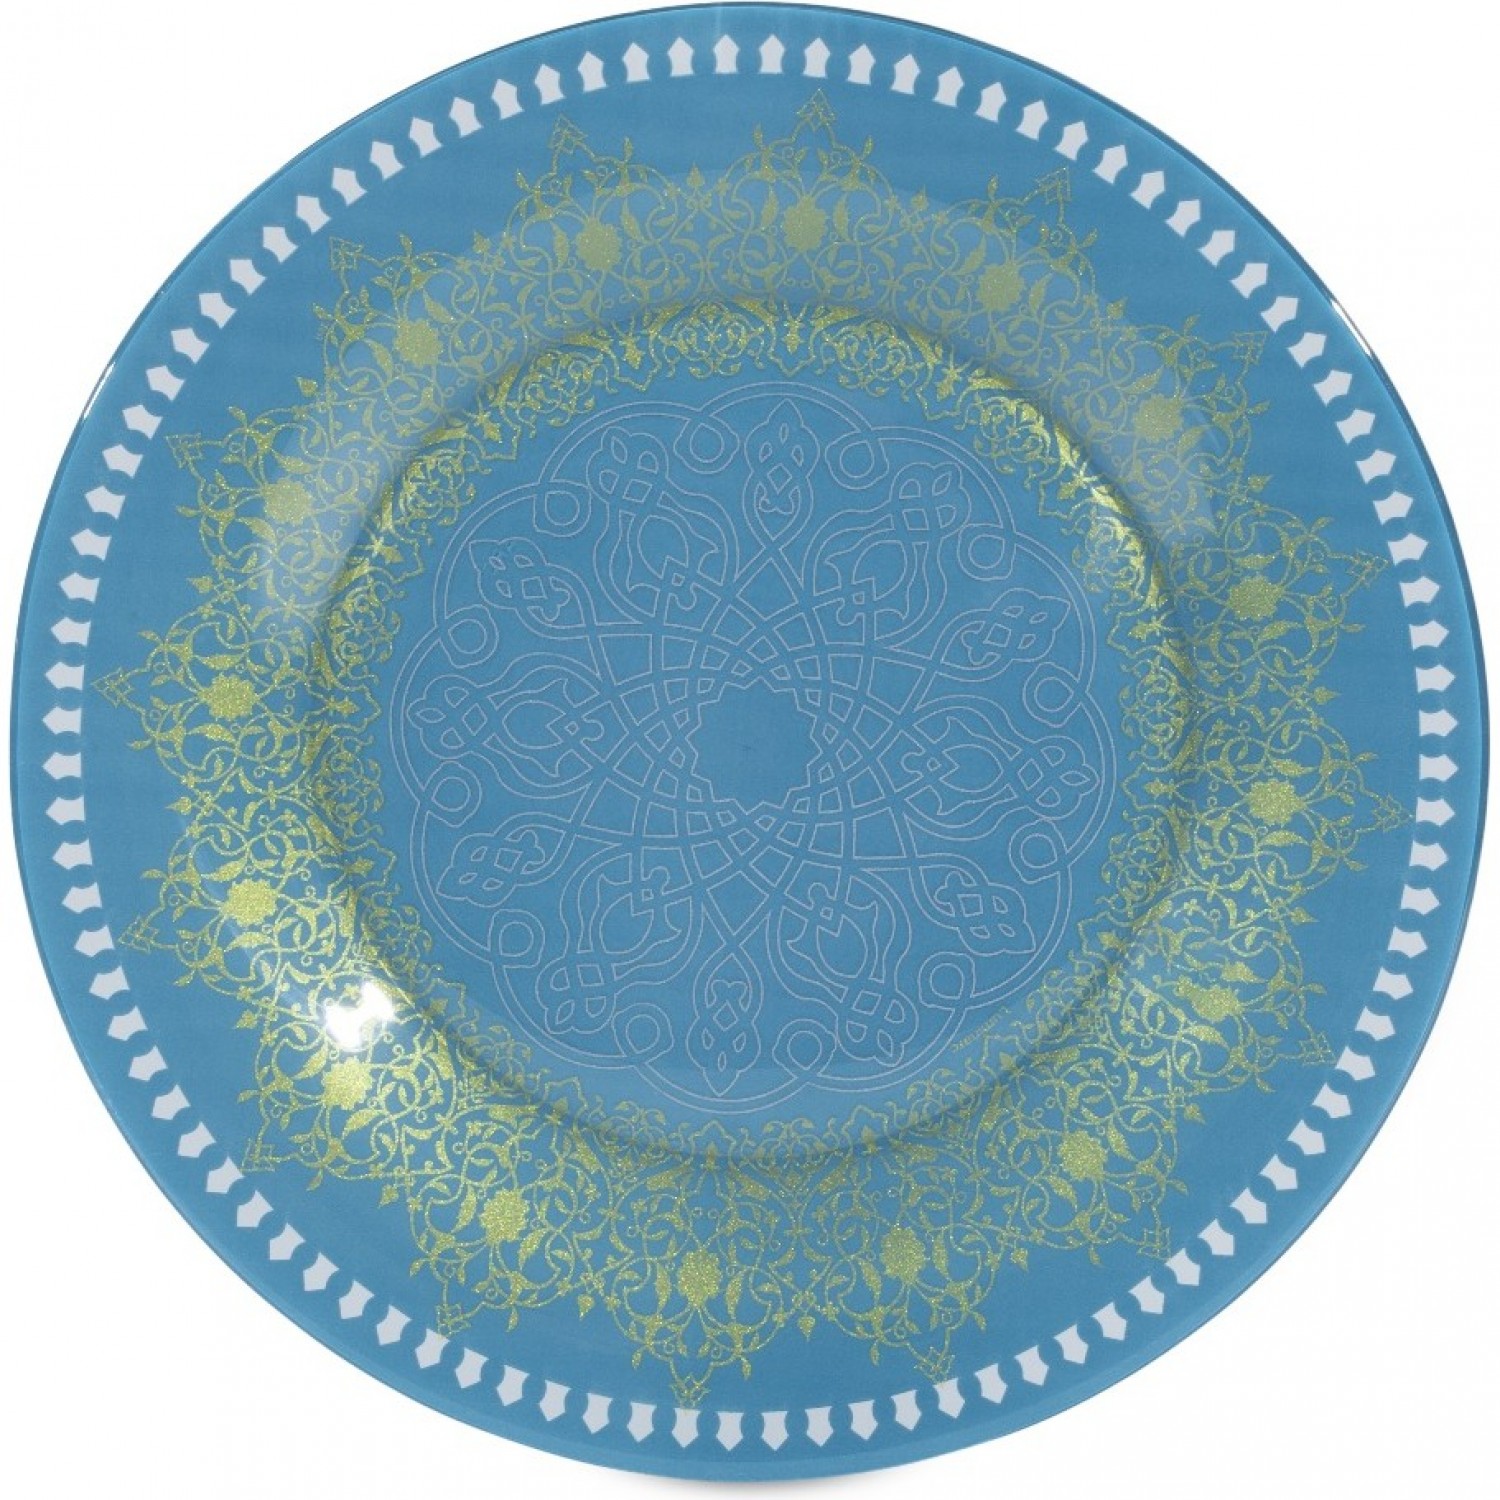 Тарелка обеденная BAGATELLE TURQUOISE 25см LUMINARC Q8808 набор чайный luminarc bagatelle turquoise 6 12 220мл стекло